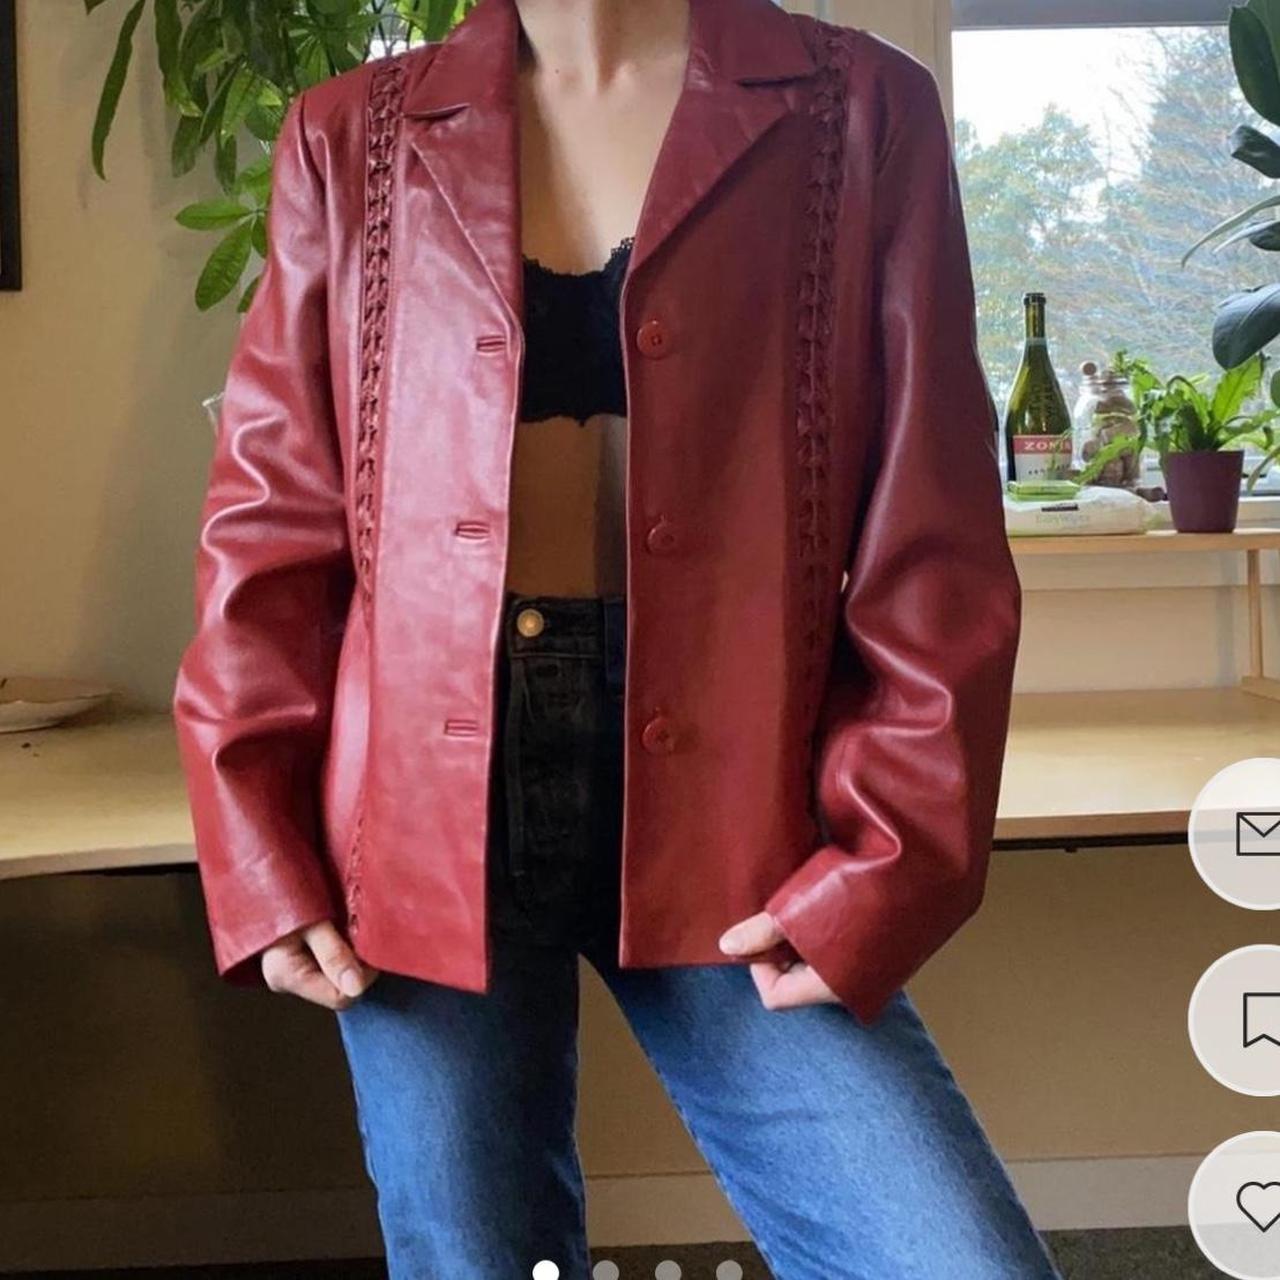 Vintage Saguaro Red Leather Blazer Size: M Can fit... - Depop